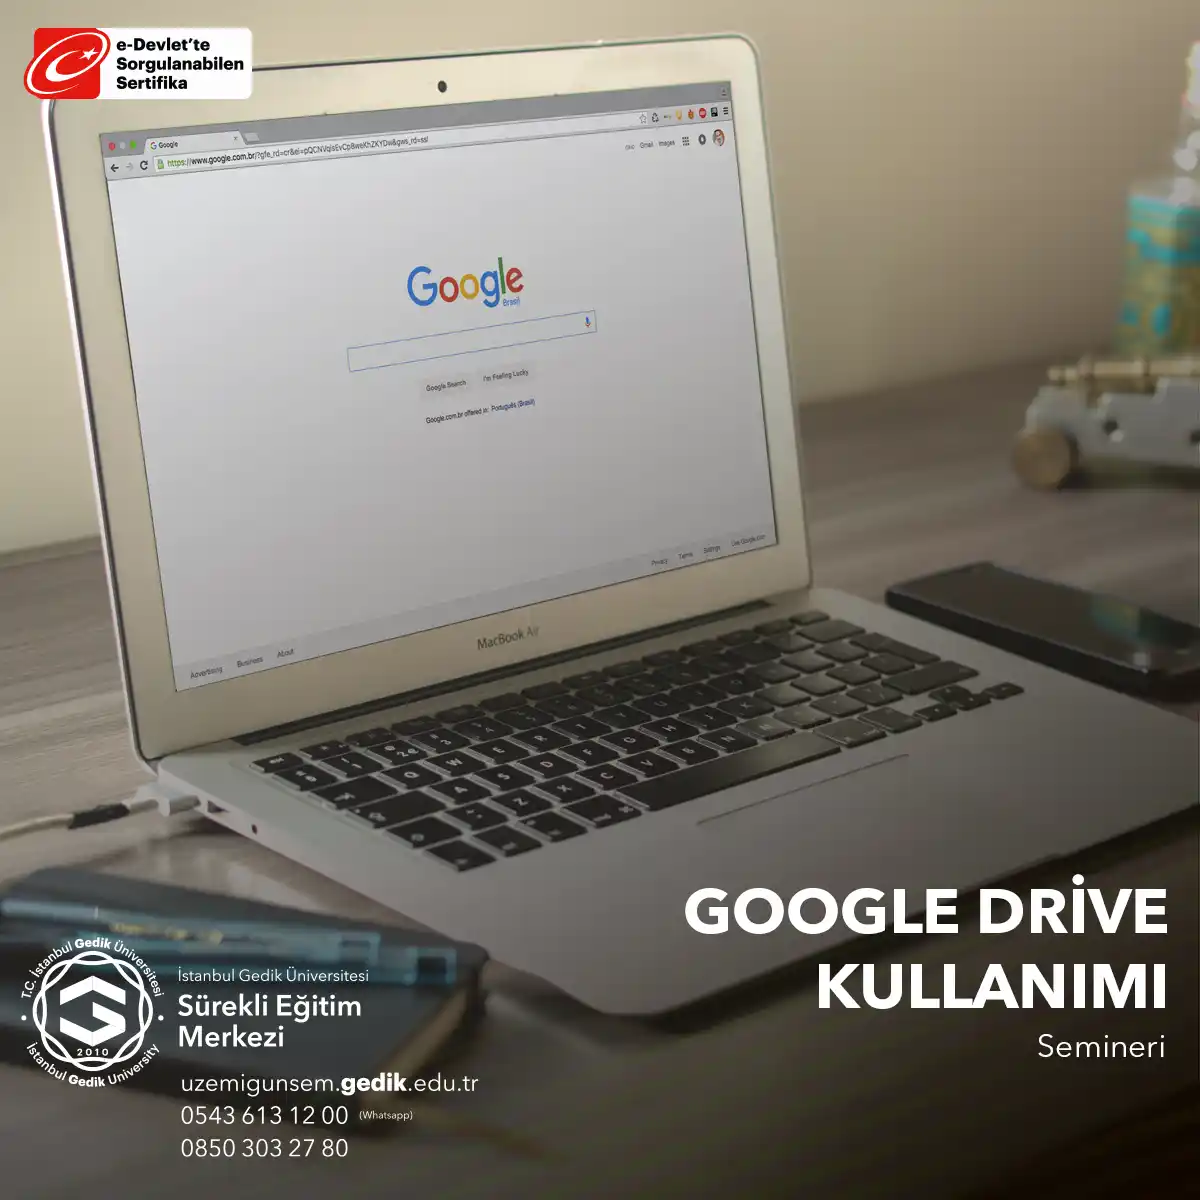 Google Drive Kullanımı Semineri